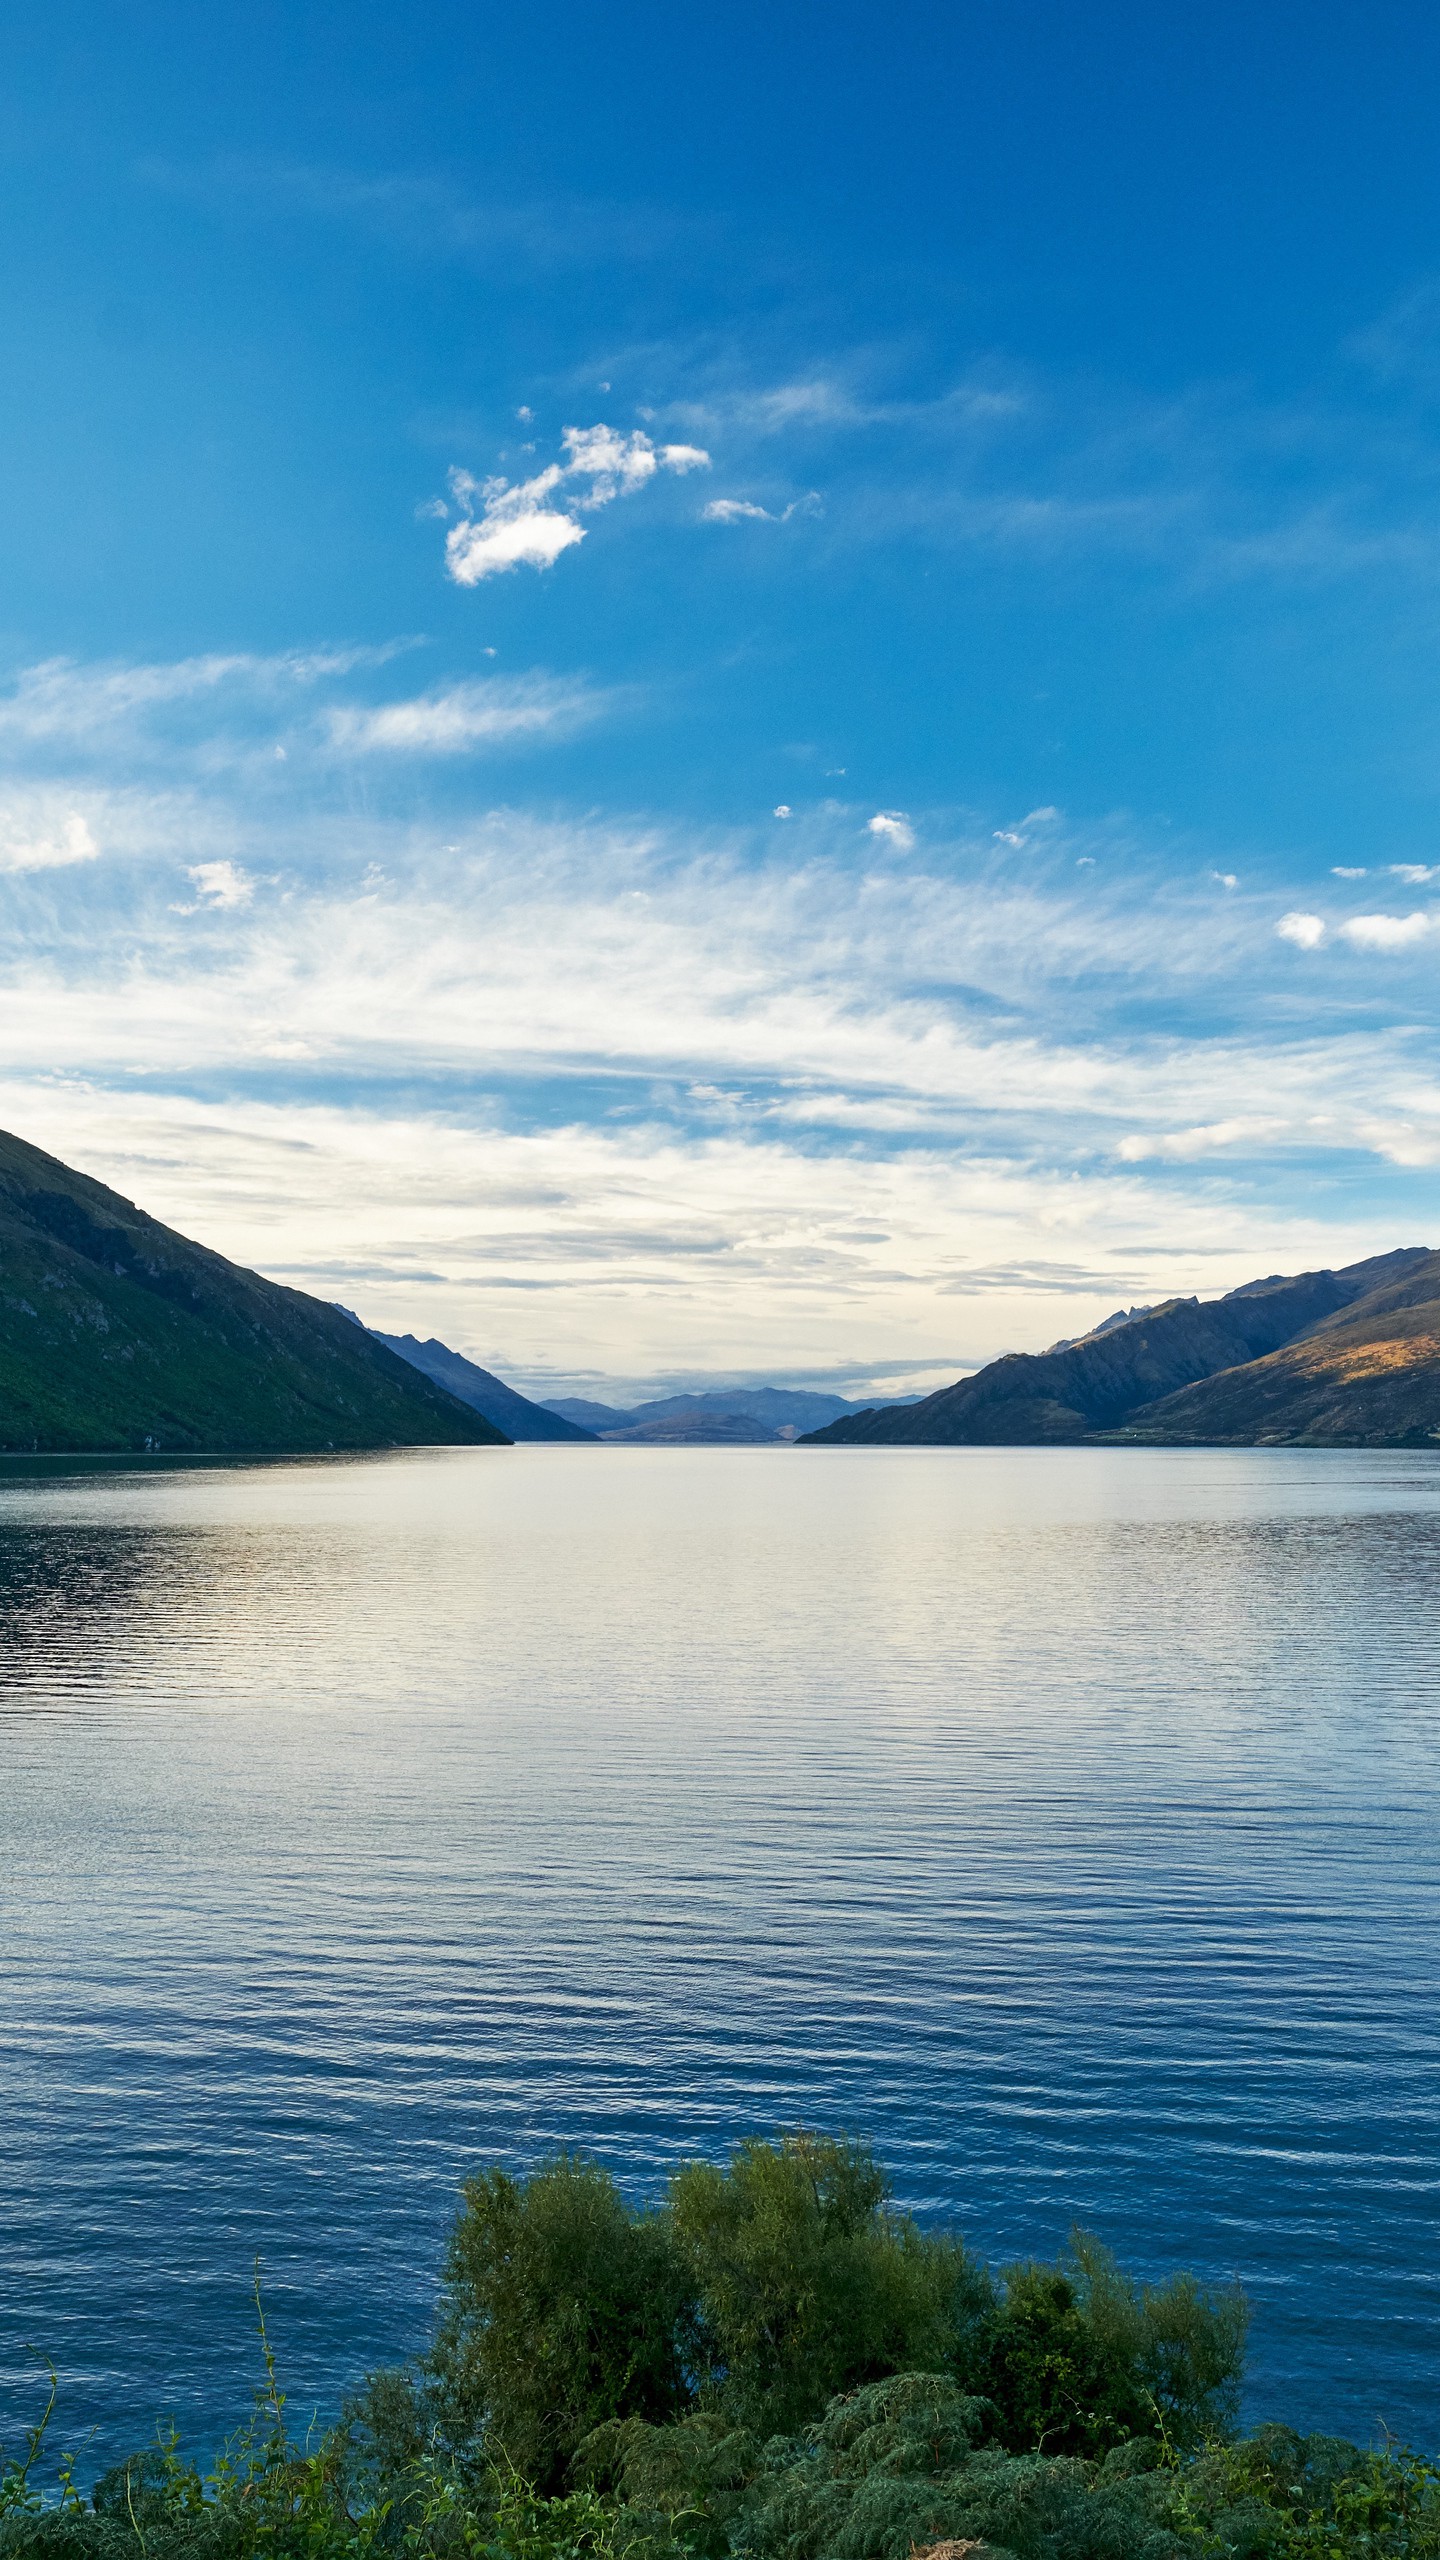 Обои на телефон озеро, вода, горы небо, пейзаж, новая зеландия - скачать  бесплатно в высоком качестве из категории Природа